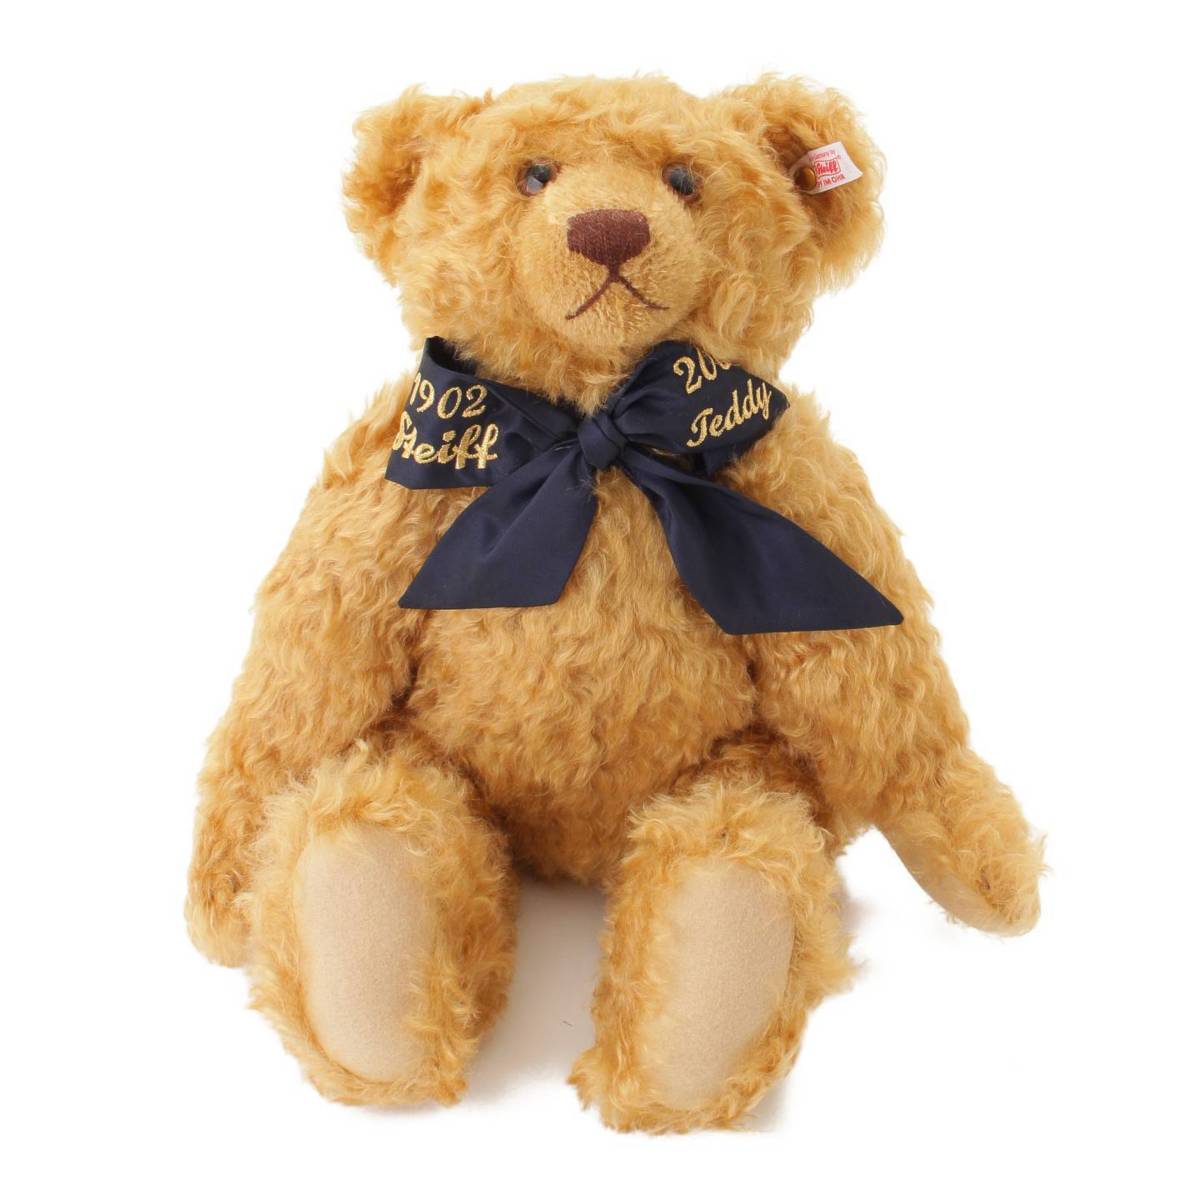 【希少・新品】テディ―ベア：100Jahre Steiff Teddybären